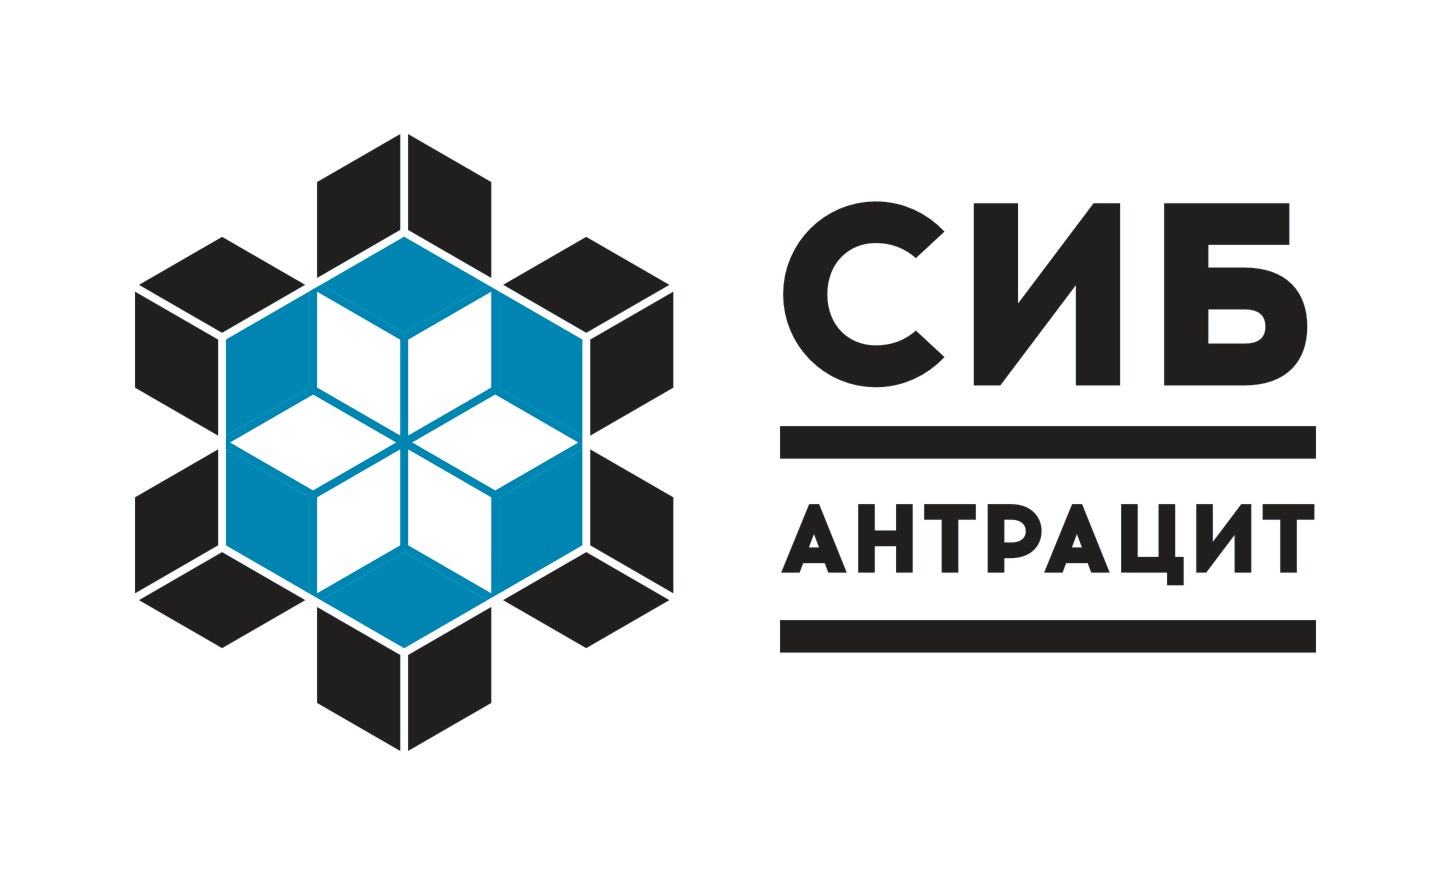 Сибирский антрацит лого